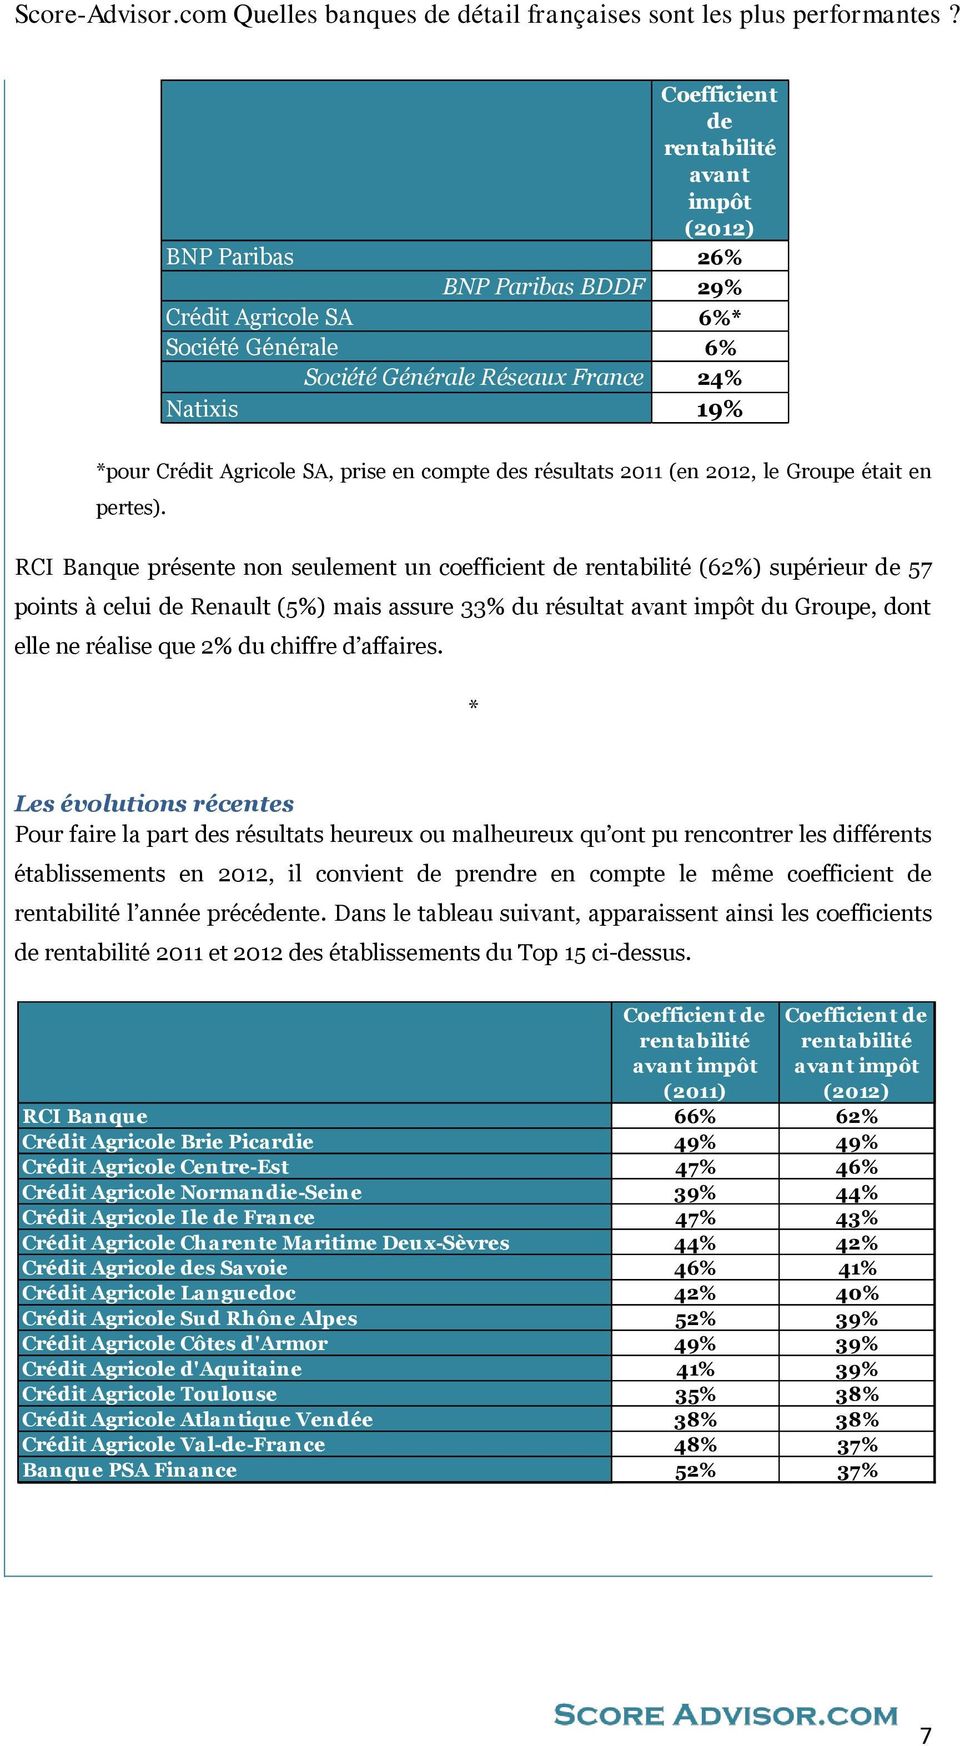 RCI Banque présente non seulement un coefficient de (62%) supérieur de 57 points à celui de Renault (5%) mais assure 33% du résultat avant impôt du Groupe, dont elle ne réalise que 2% du chiffre d